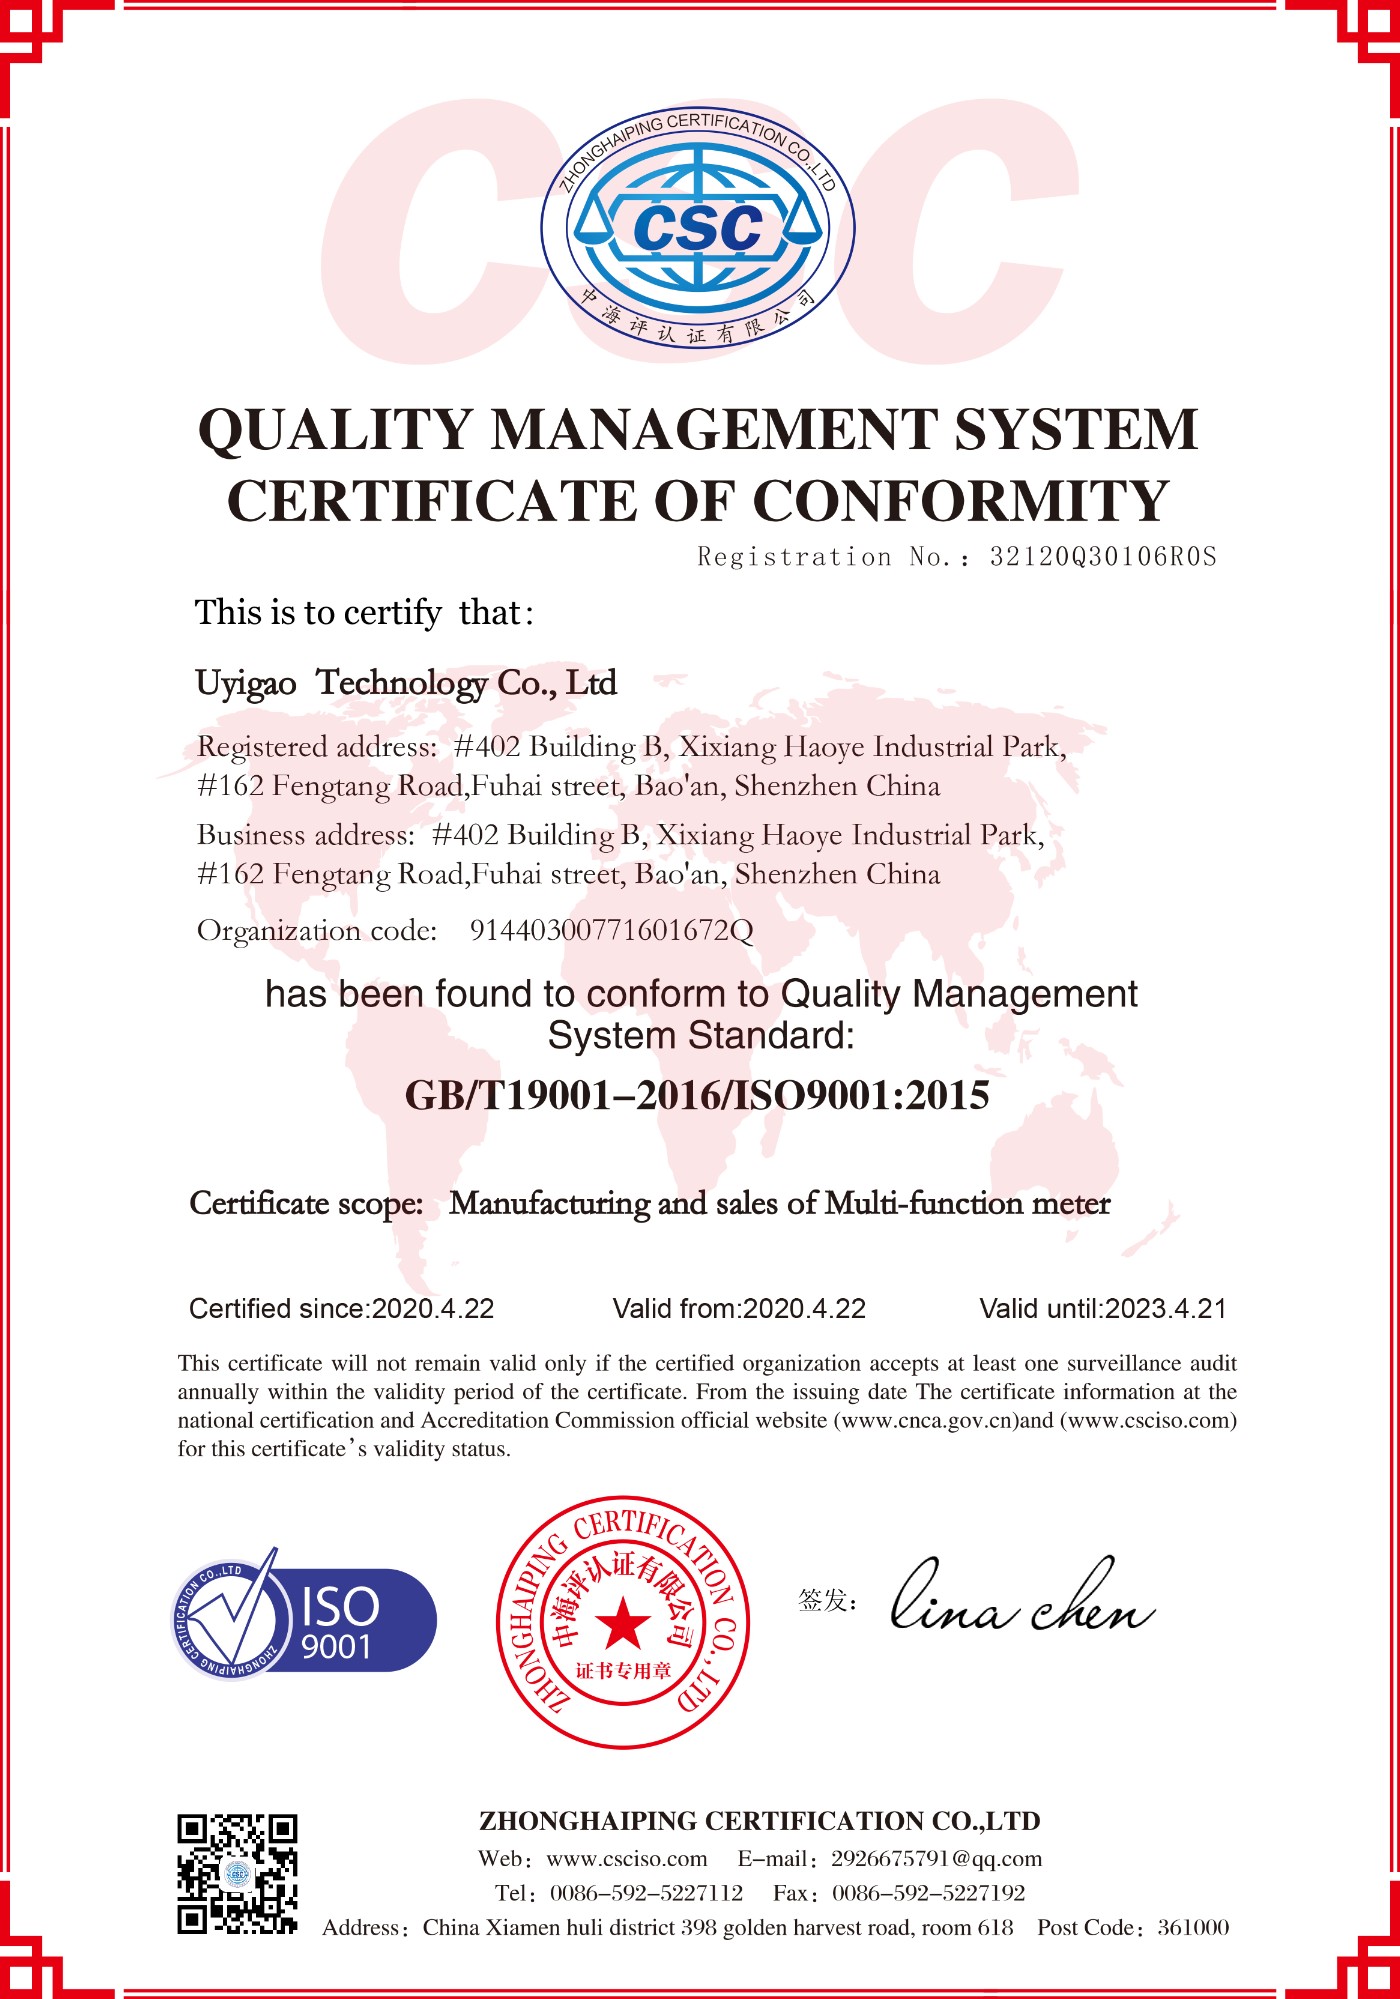 优仪高国际质量体系认证